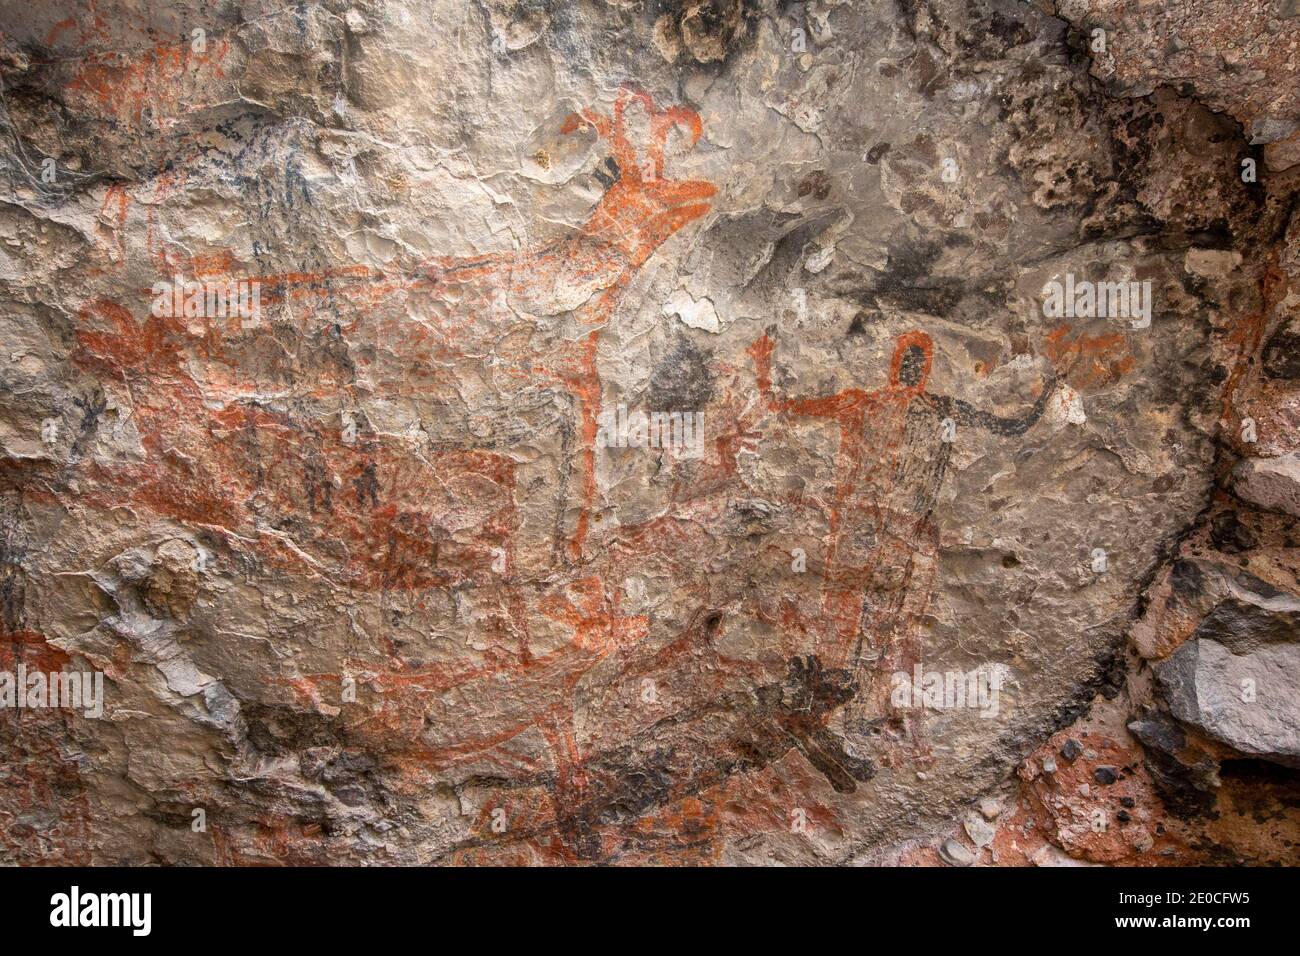 Pictogramas de arte rupestre del pueblo Cochimi, Cueva del Raton, Patrimonio de la Humanidad de la UNESCO, Sierra de San Francisco, Baja California Sur, México Foto de stock